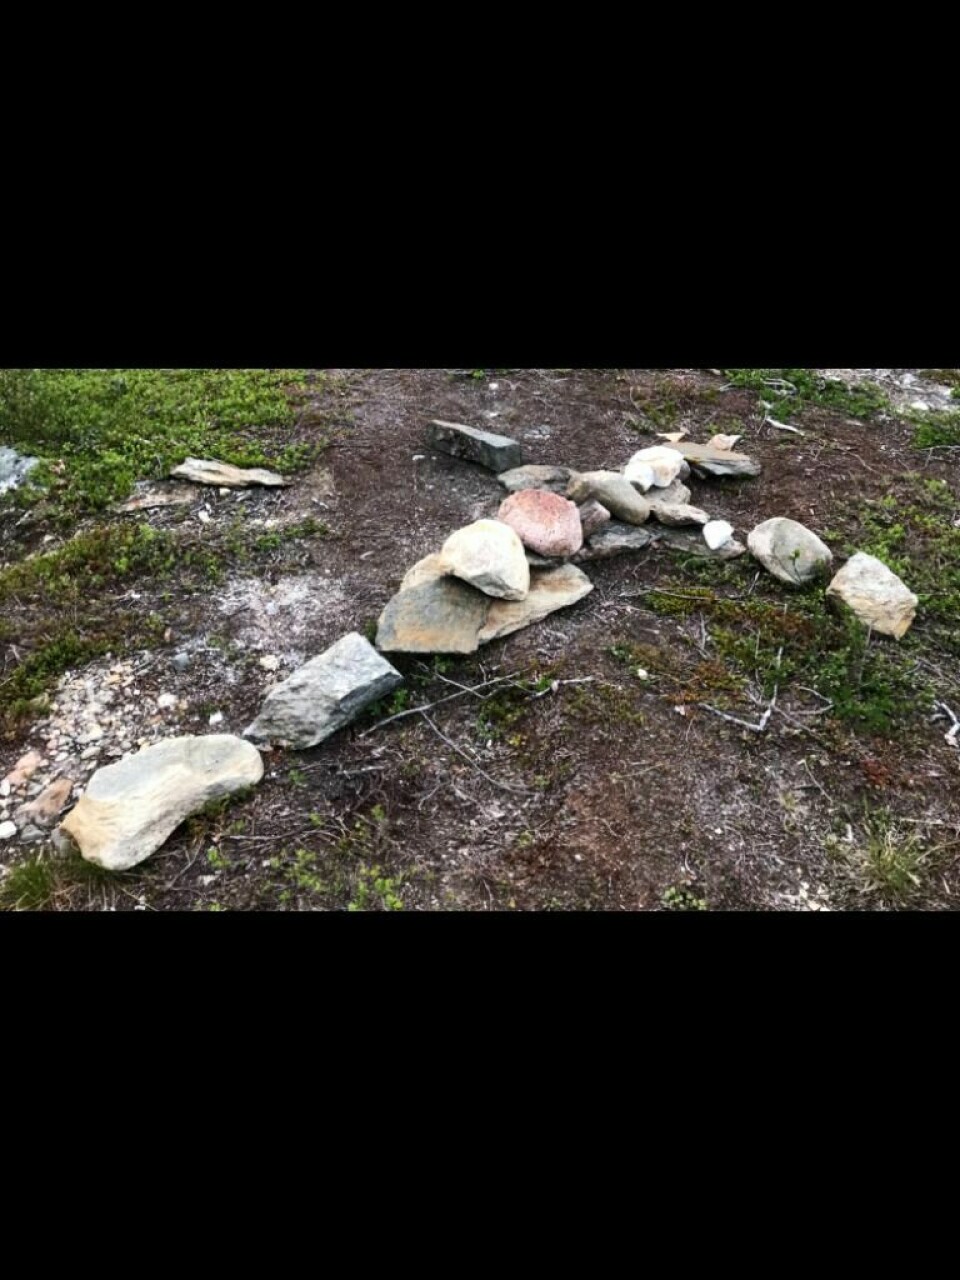 FARE FOR HENLEGGELSE: En samisk familie ble møtt av et stort steinkors da de kom til lavvoplassen sin ved Altevatnet tidligere i sommer. De opplever det som en drapstrussel. Politiet har fortsatt ingen mistenkte i saken. FOTO: PRIVAT Foto: Privat